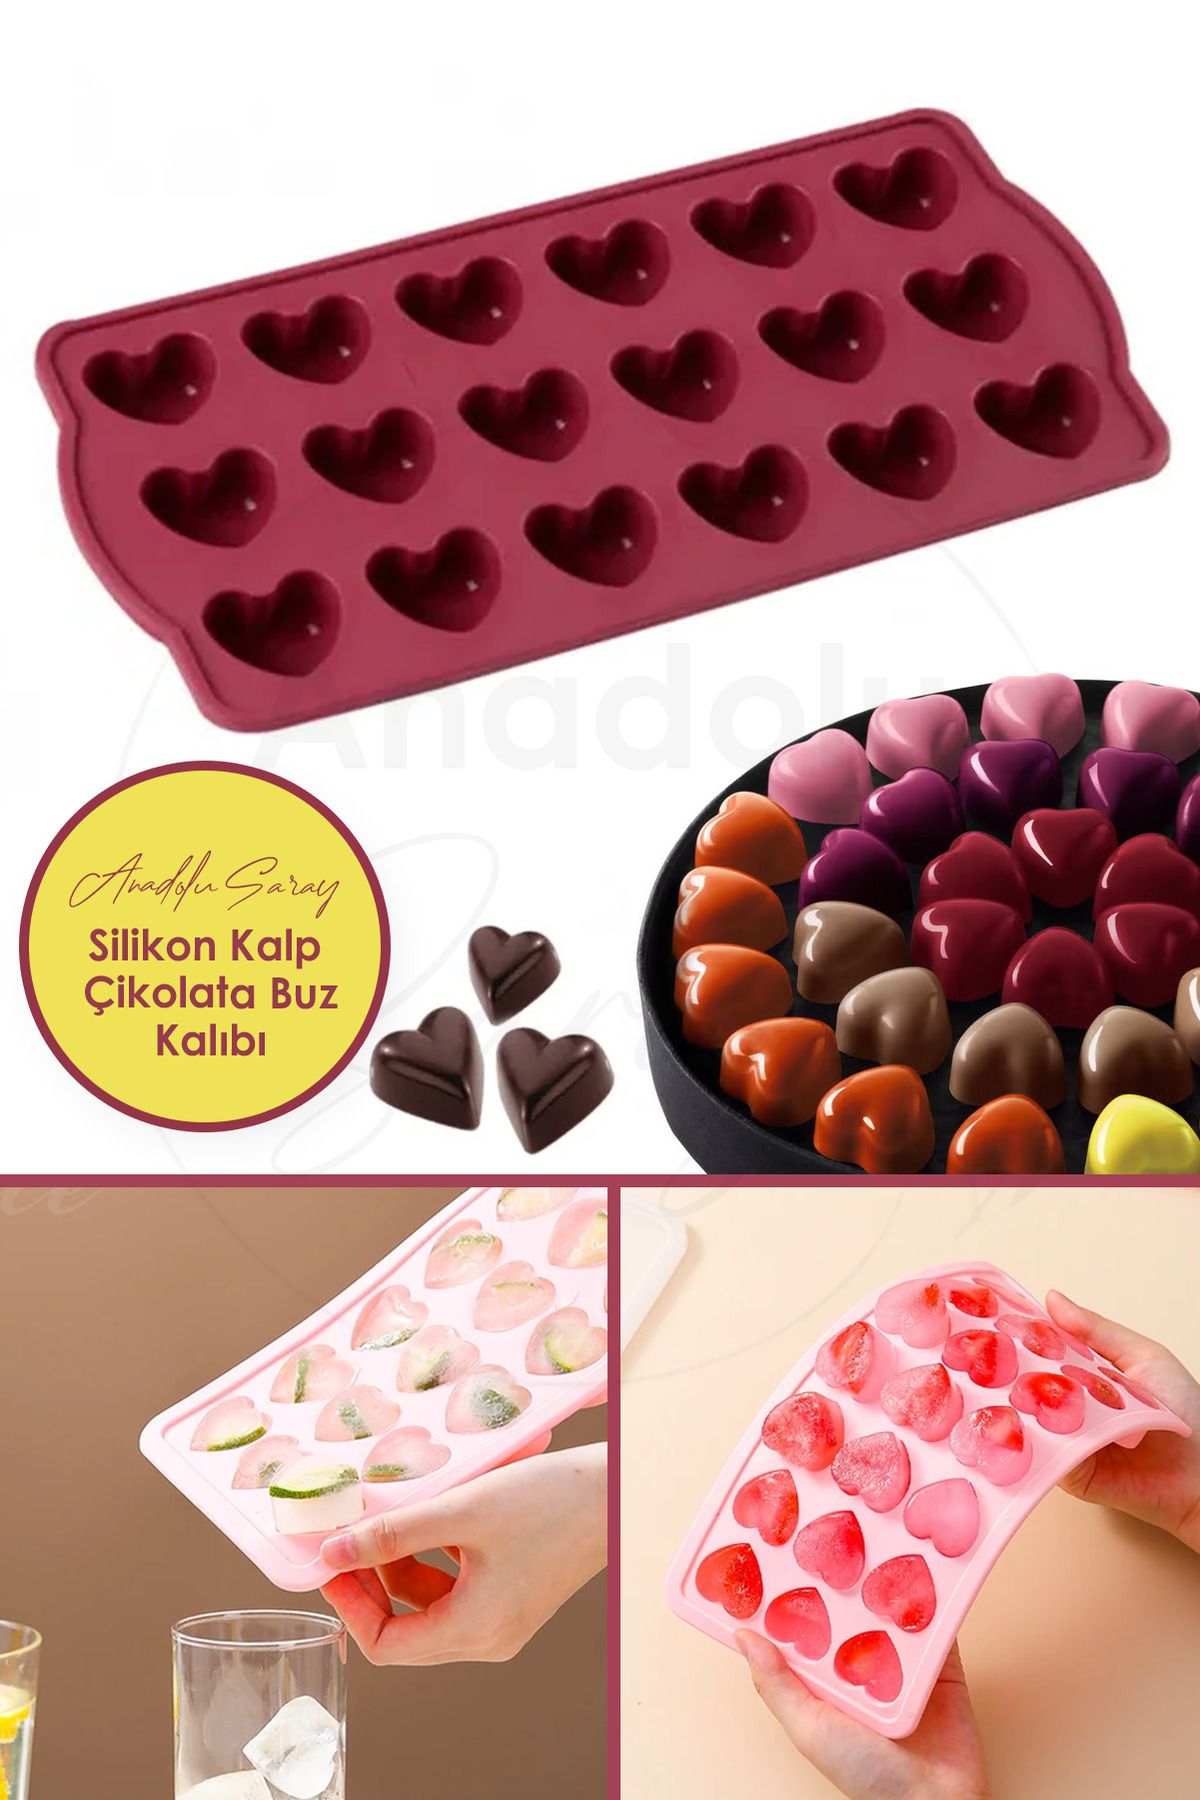 Anadolu Saray Silikon 18'li Kalp Şeklinde Buz Jelibon Çikolata Kalıbı | 18'li Kalp Jelibon Çikolata Buz Kalıbı